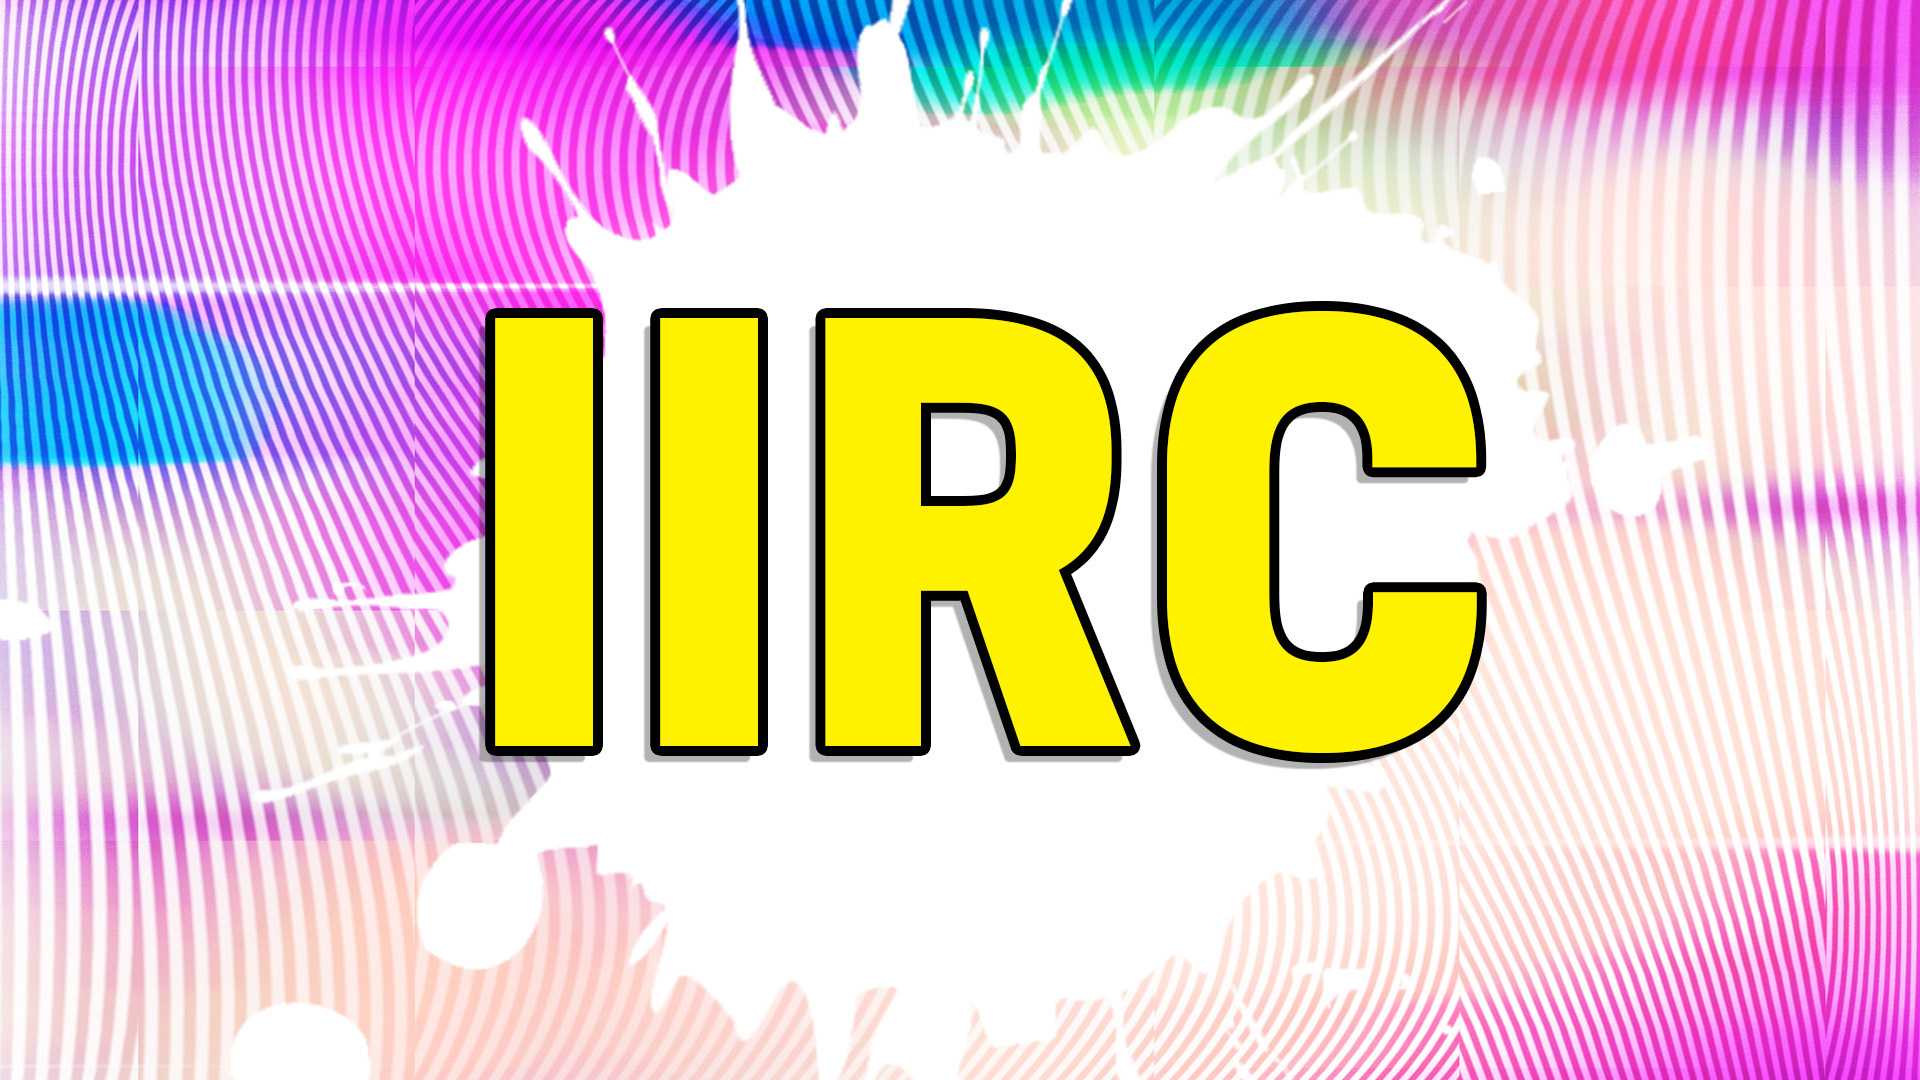 IIRC